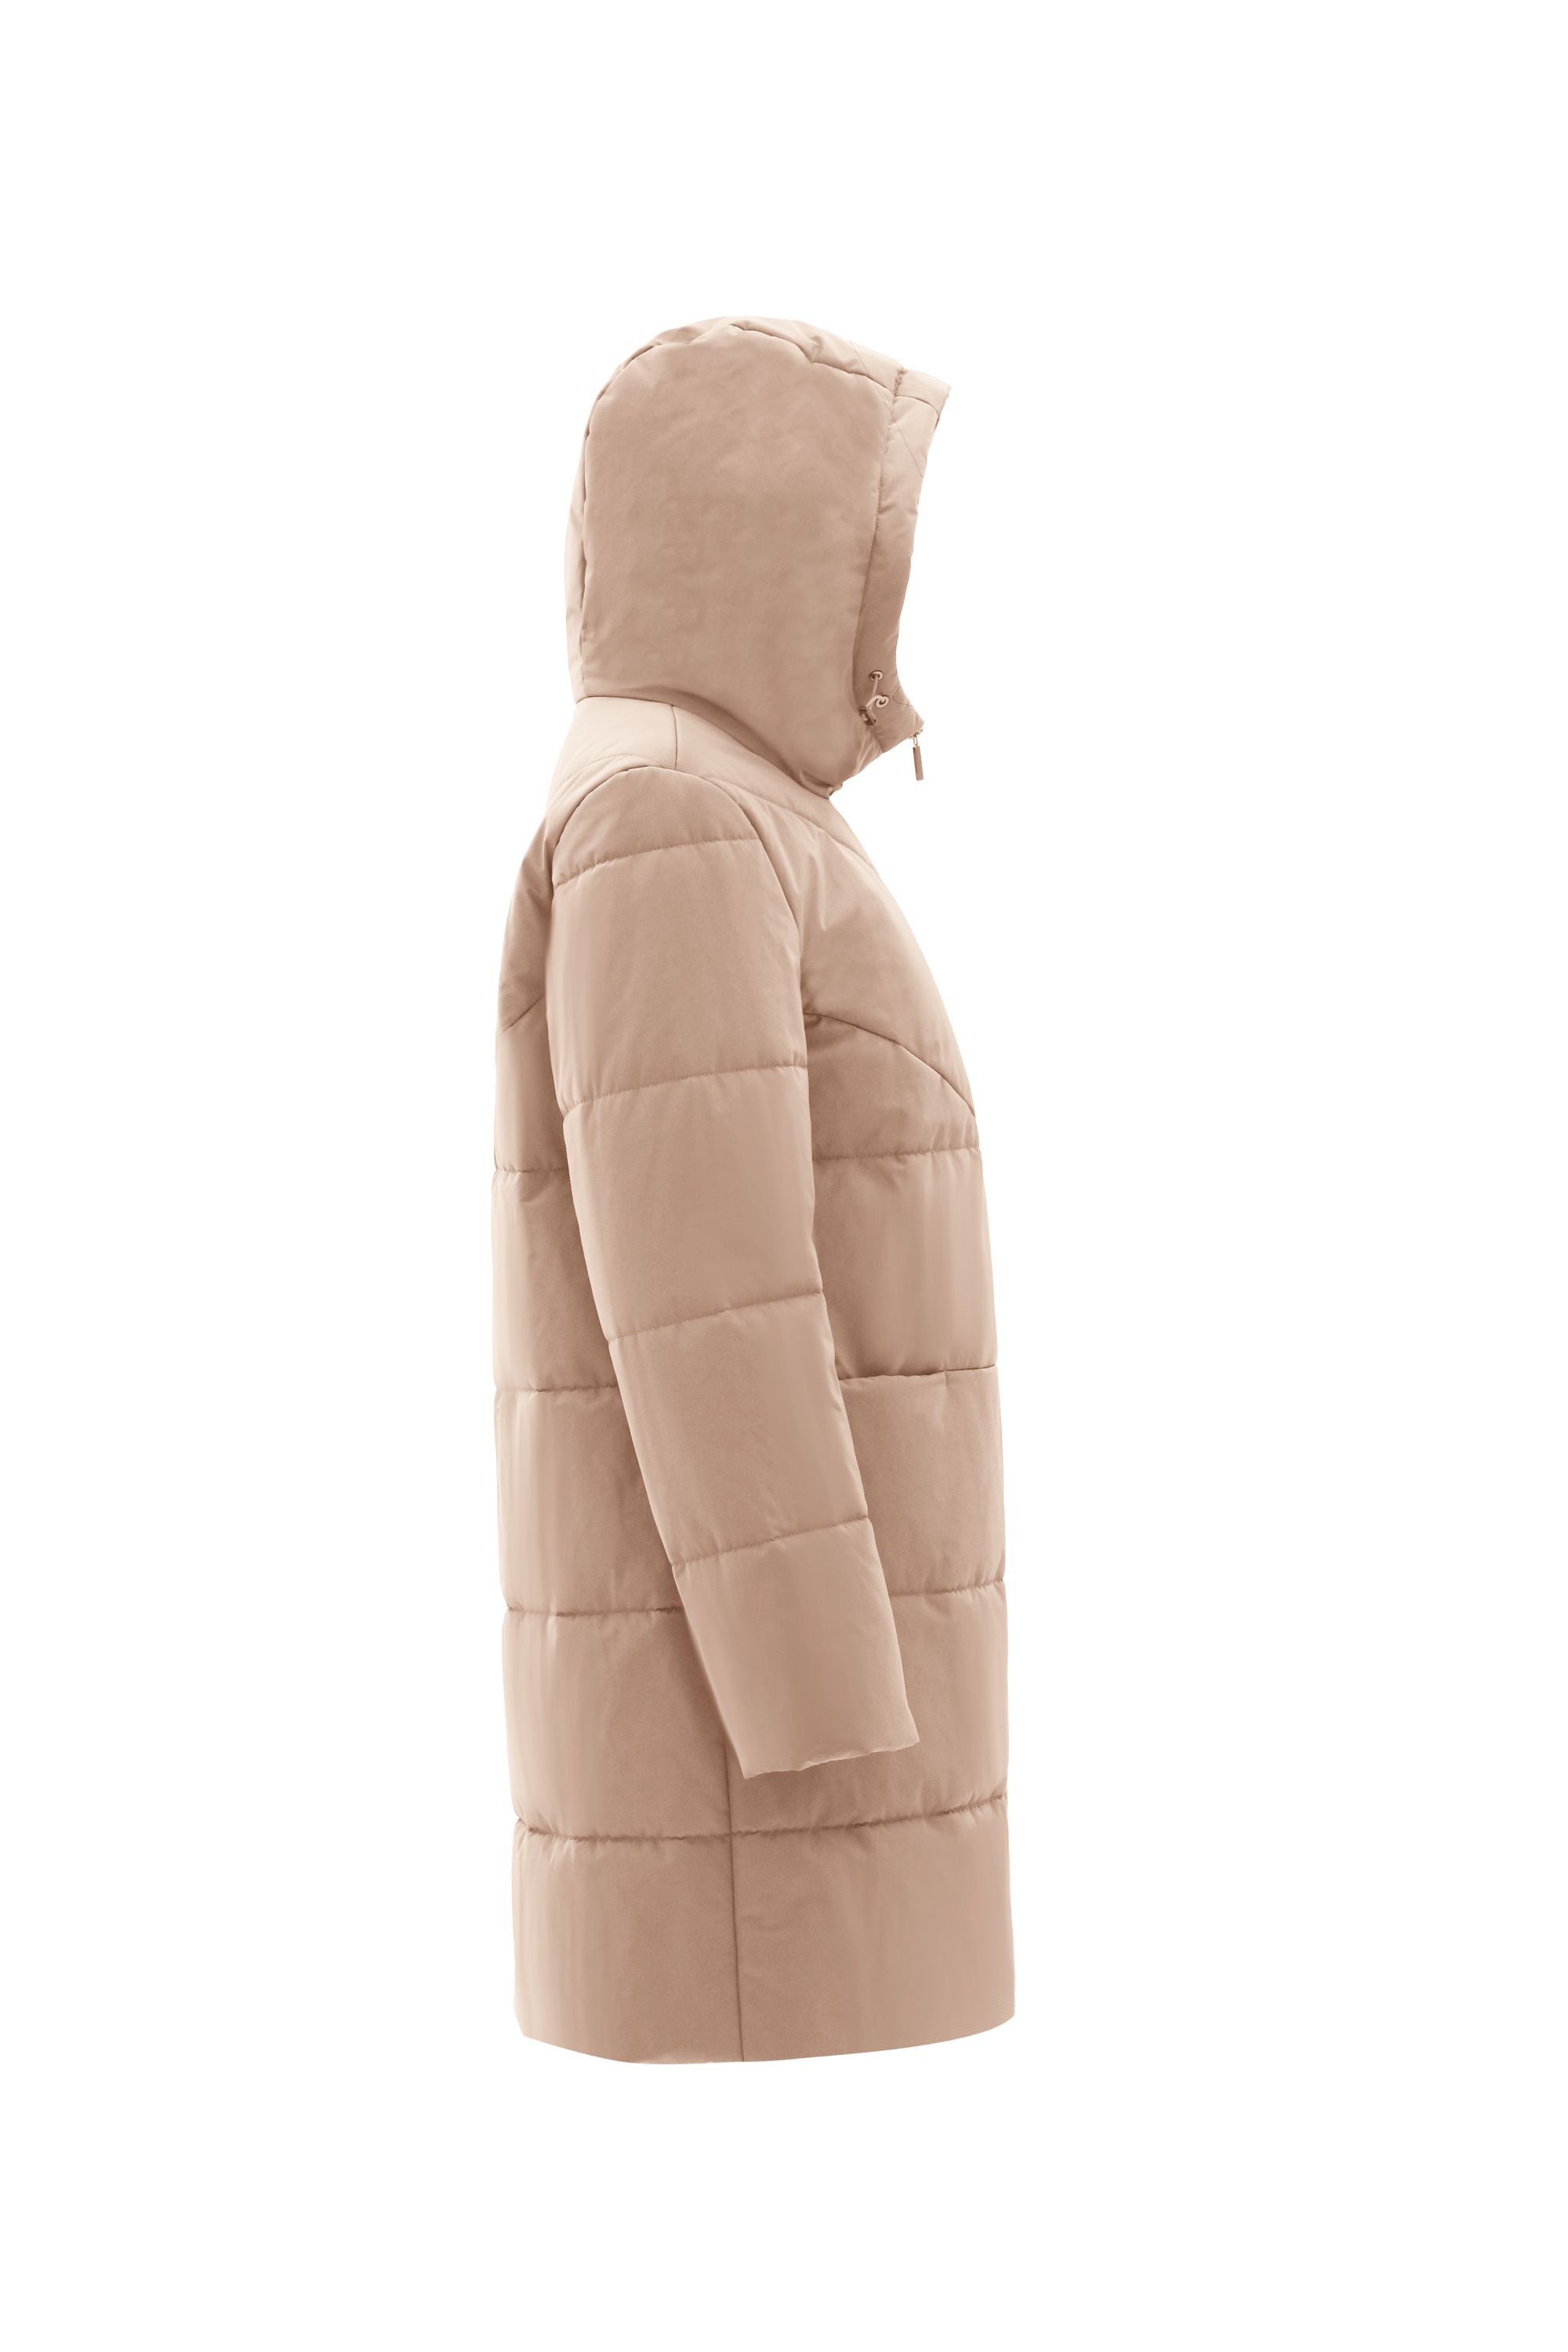 Пальто женское плащевое утепленное 5-12381-1. Фото 2.